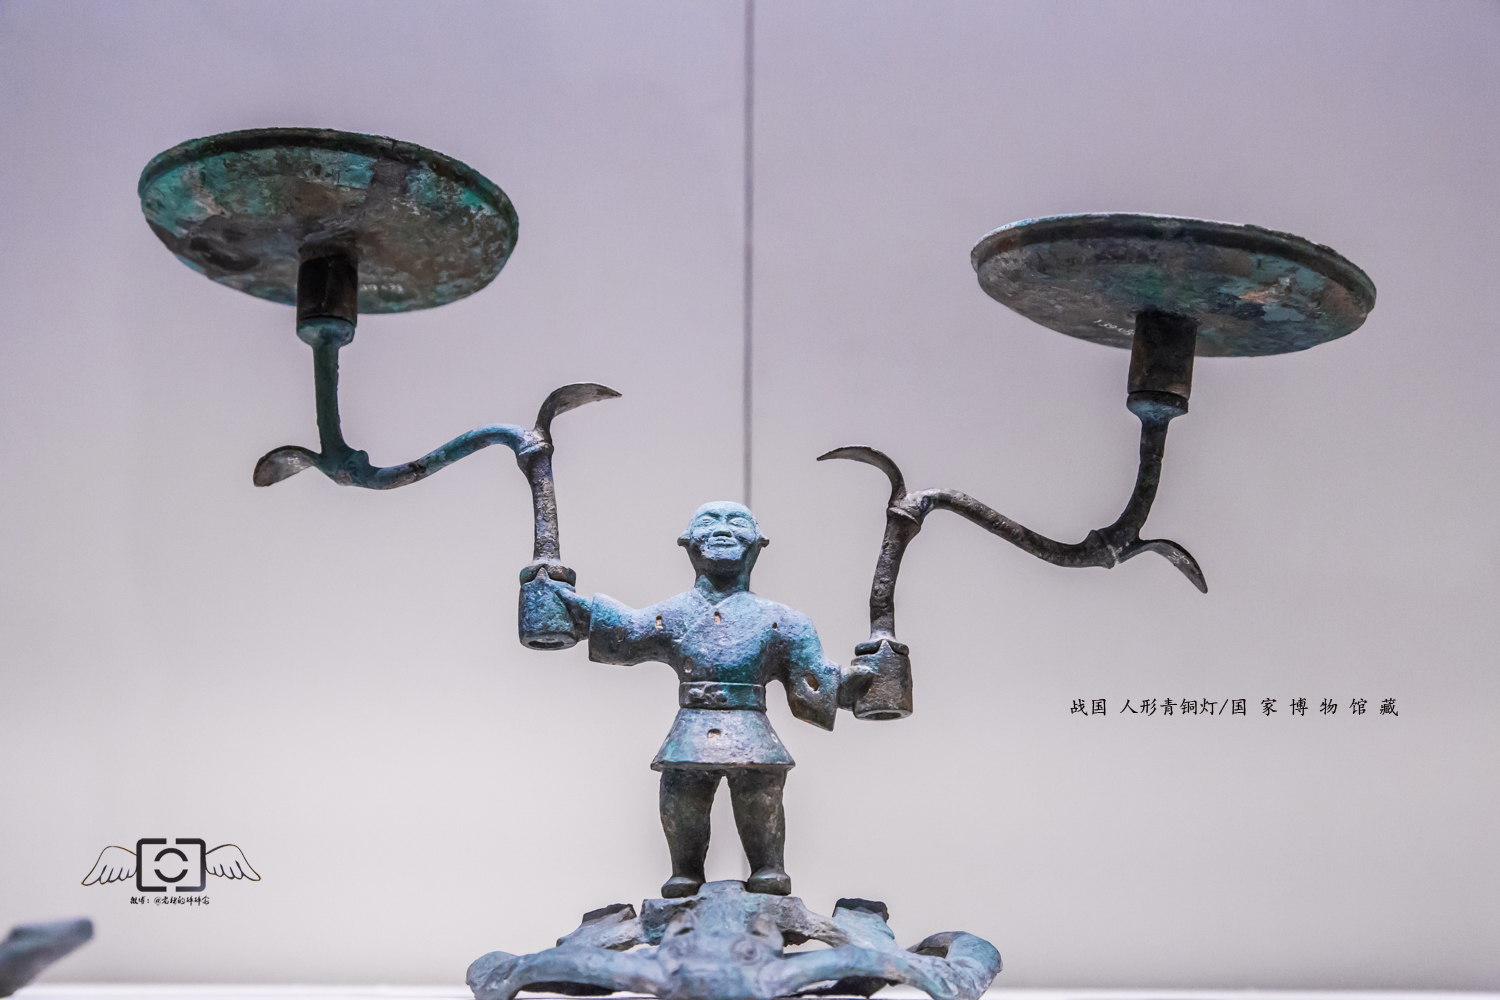 一眼千年,国家博物馆的国宝之战国青铜人形灯